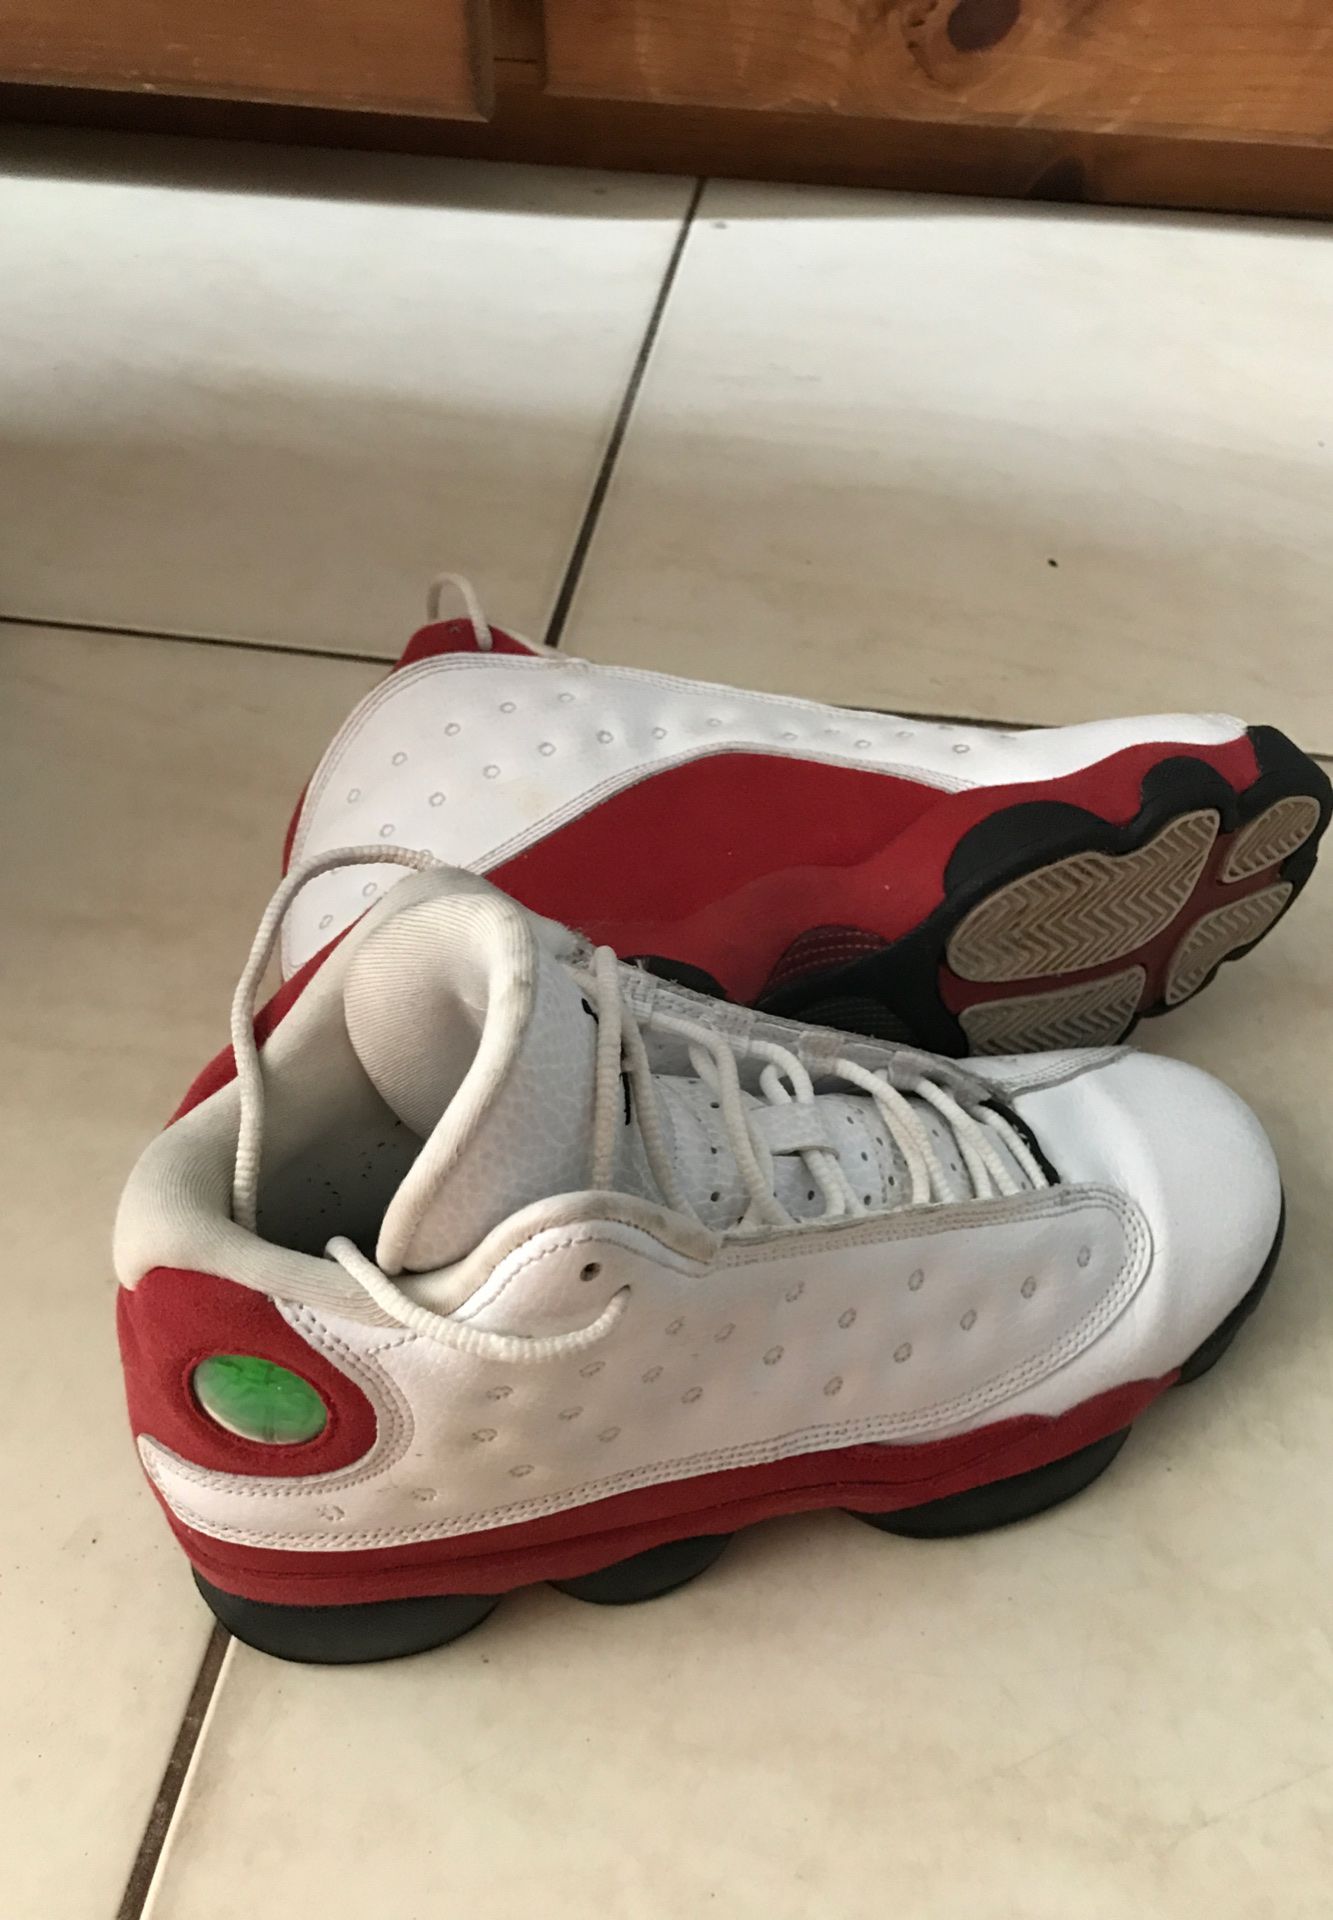 Jordan 13’s Retro Size 7 in Men Red & White